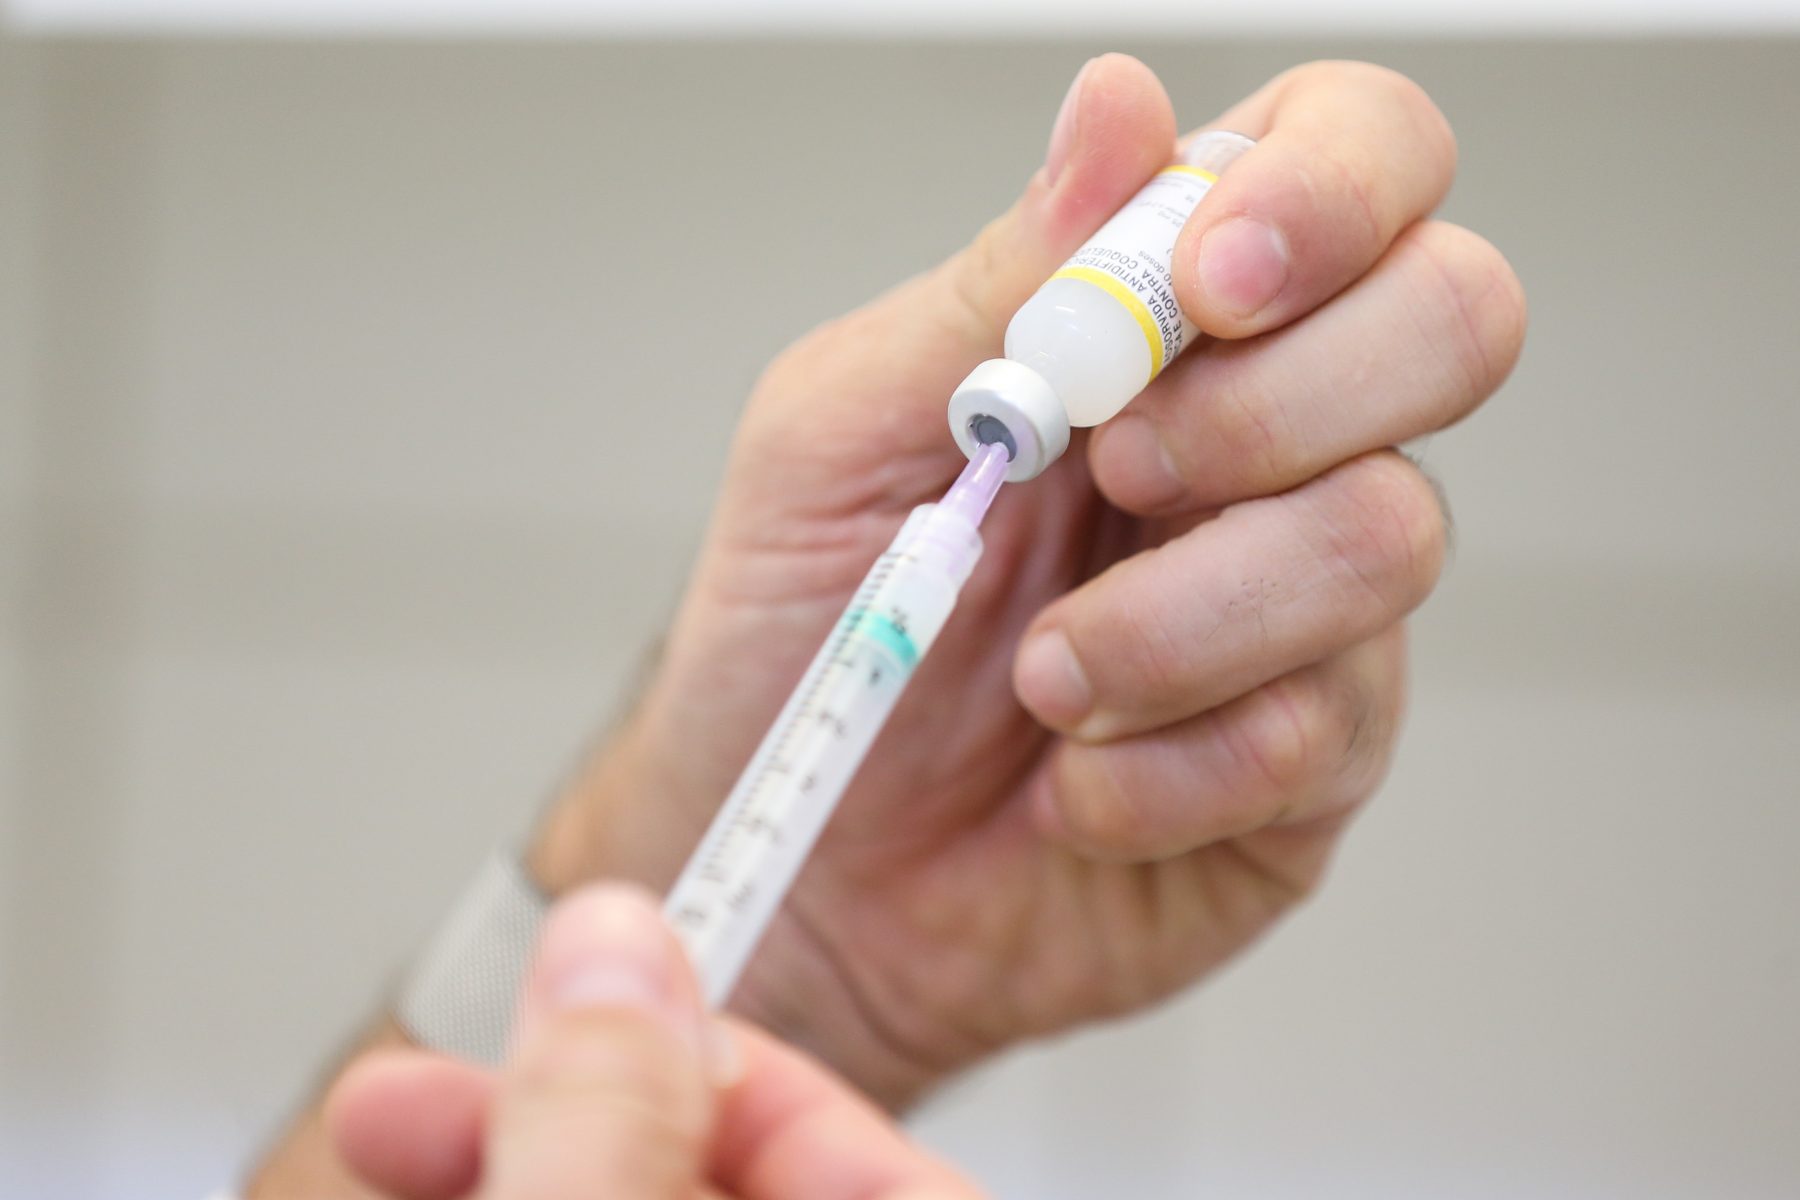 Ministério da Saúde informa que duas vacinas estão em falta no país